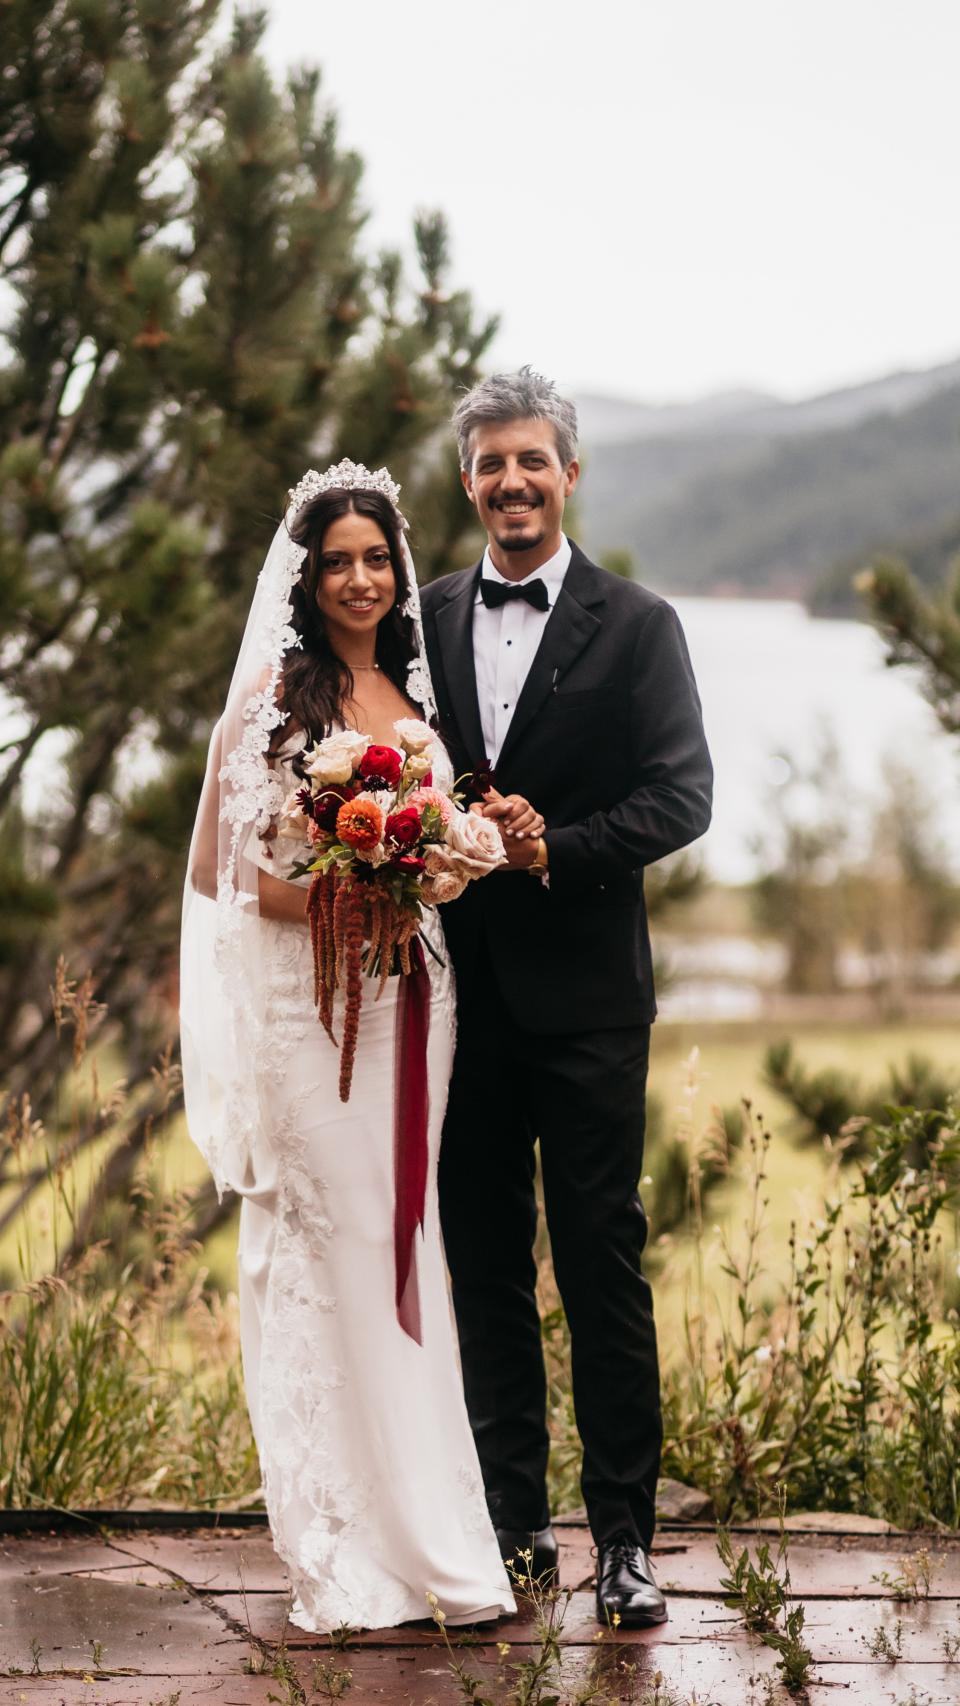 La boda americana del hijo de Antonio Canales con Andrea Gomez las imágenes exclusivas de su gran día